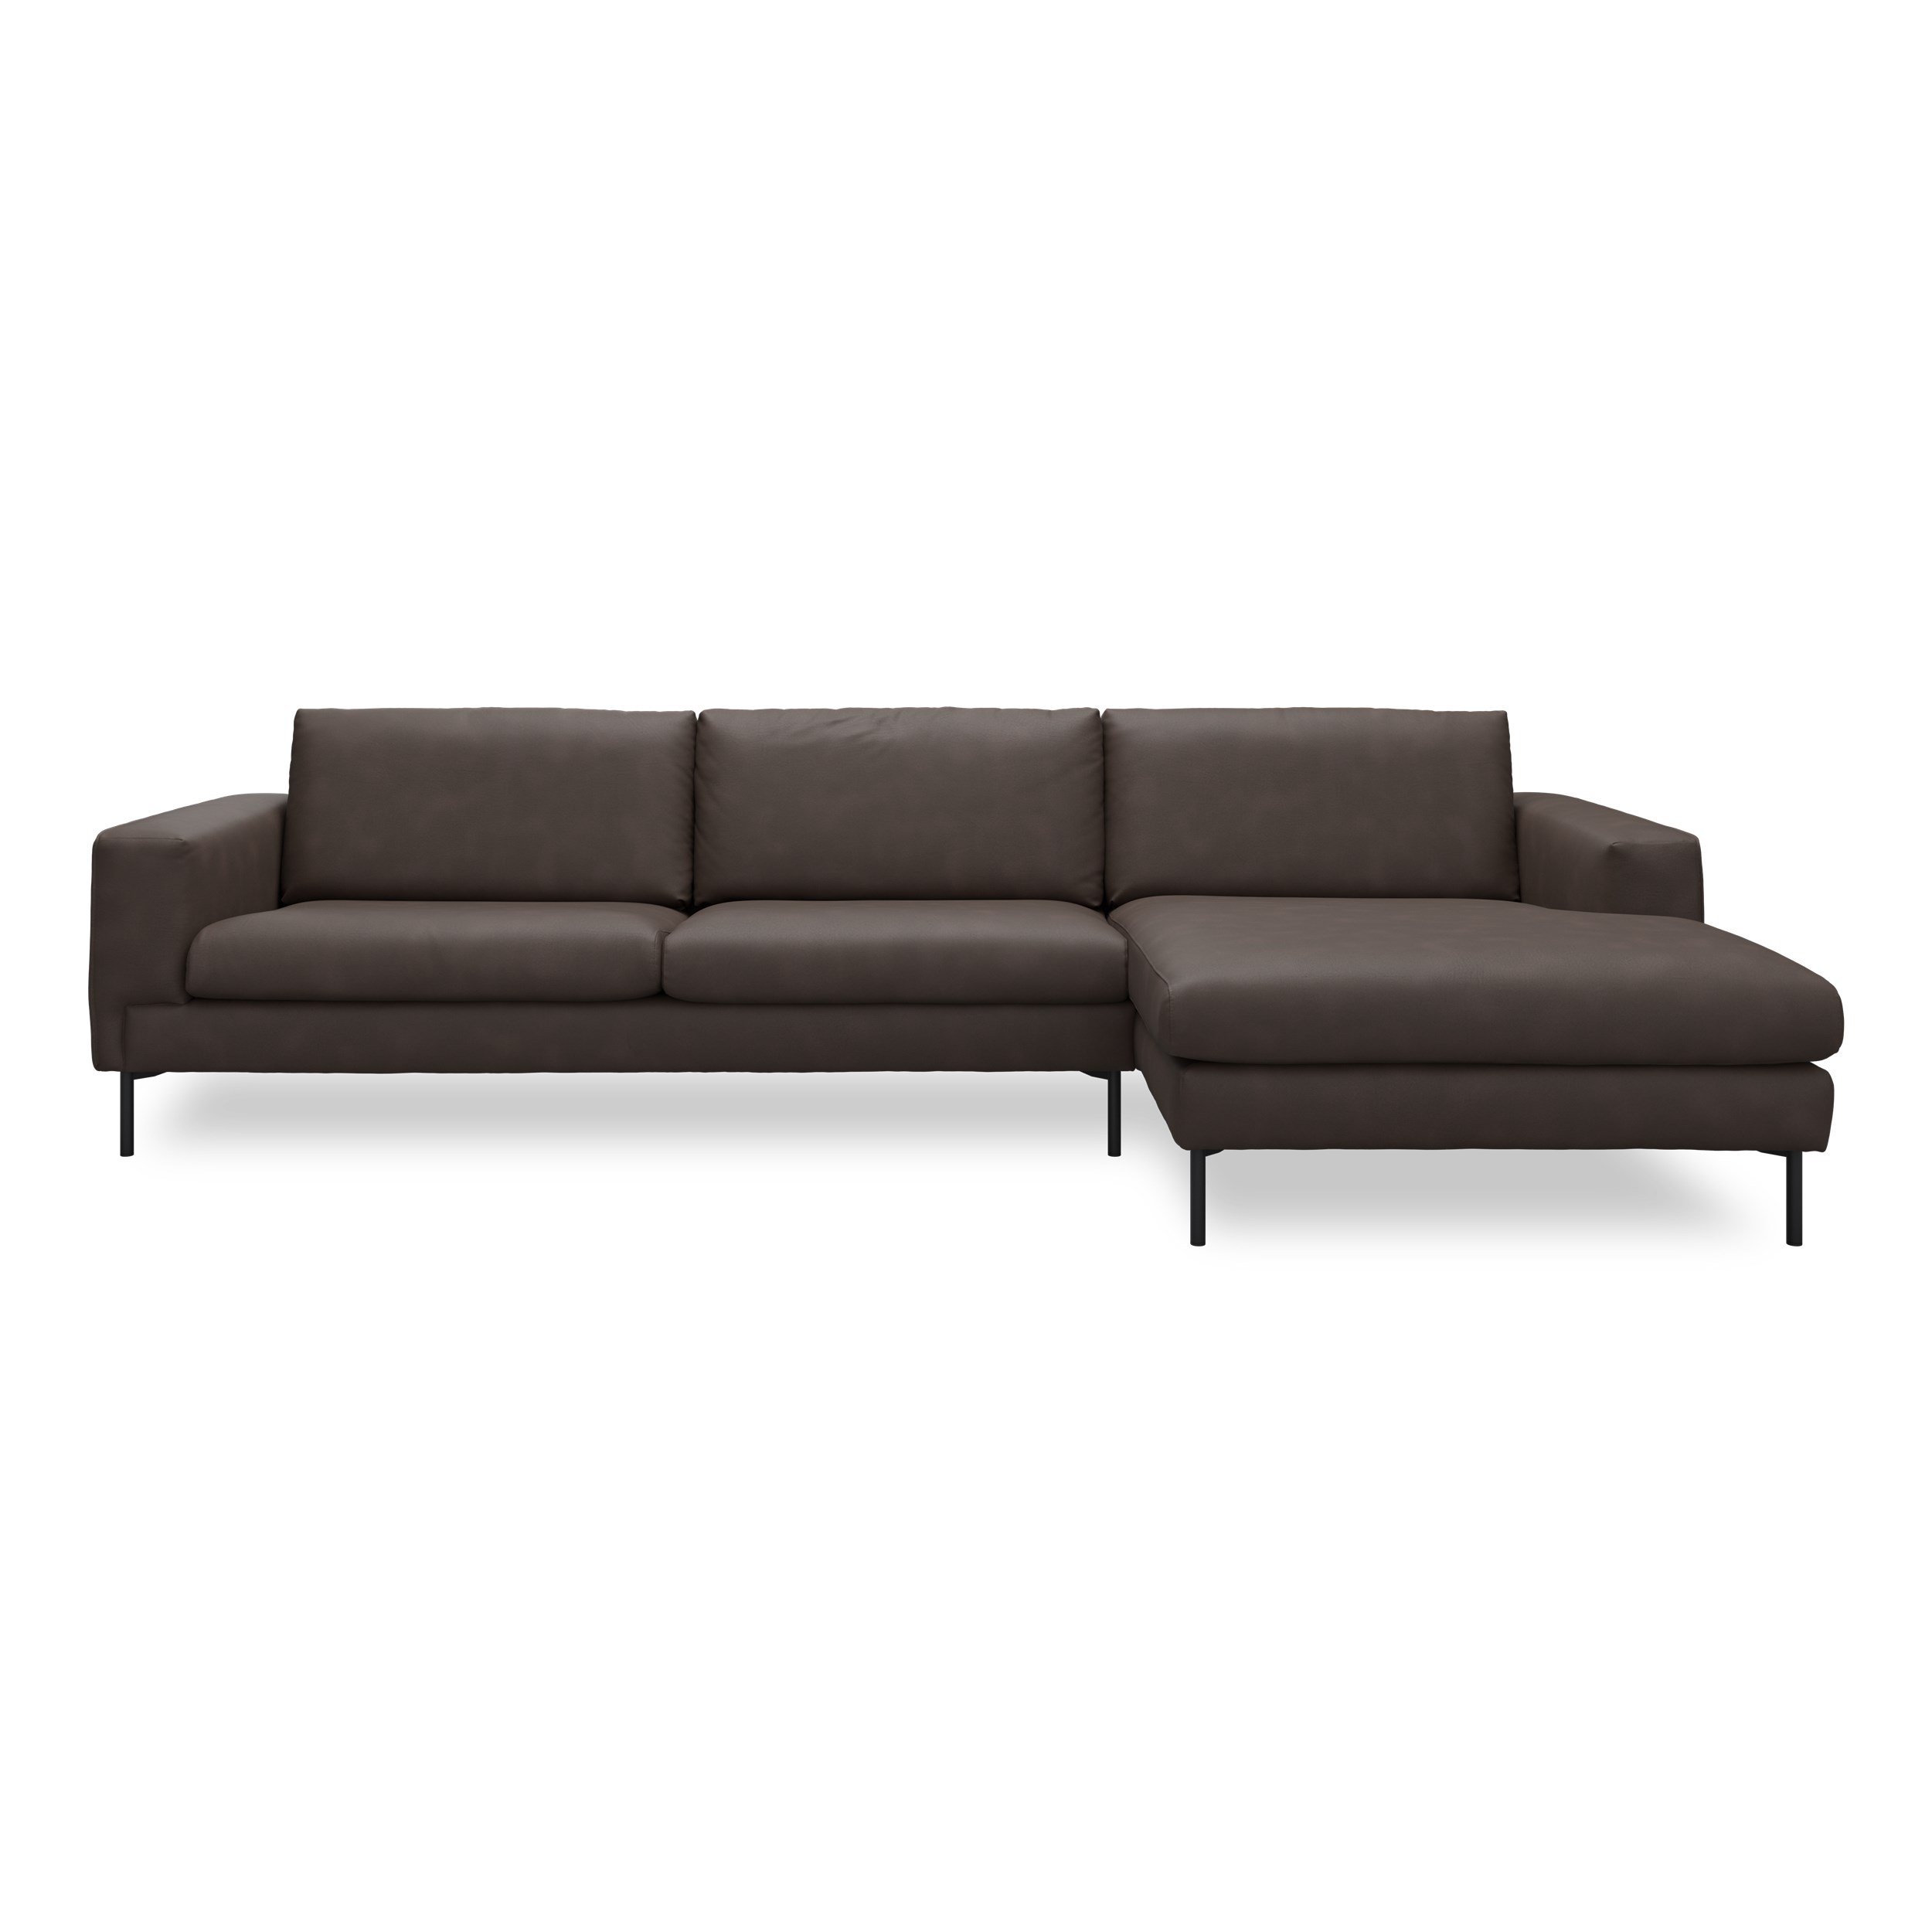 Nyland højrevendt sofa med chaiselong - Kentucky 1 earth bonded læder, Ben no. 145 i sortlakeret metal og S: Koldskum R:Koldskum med fiberfyld